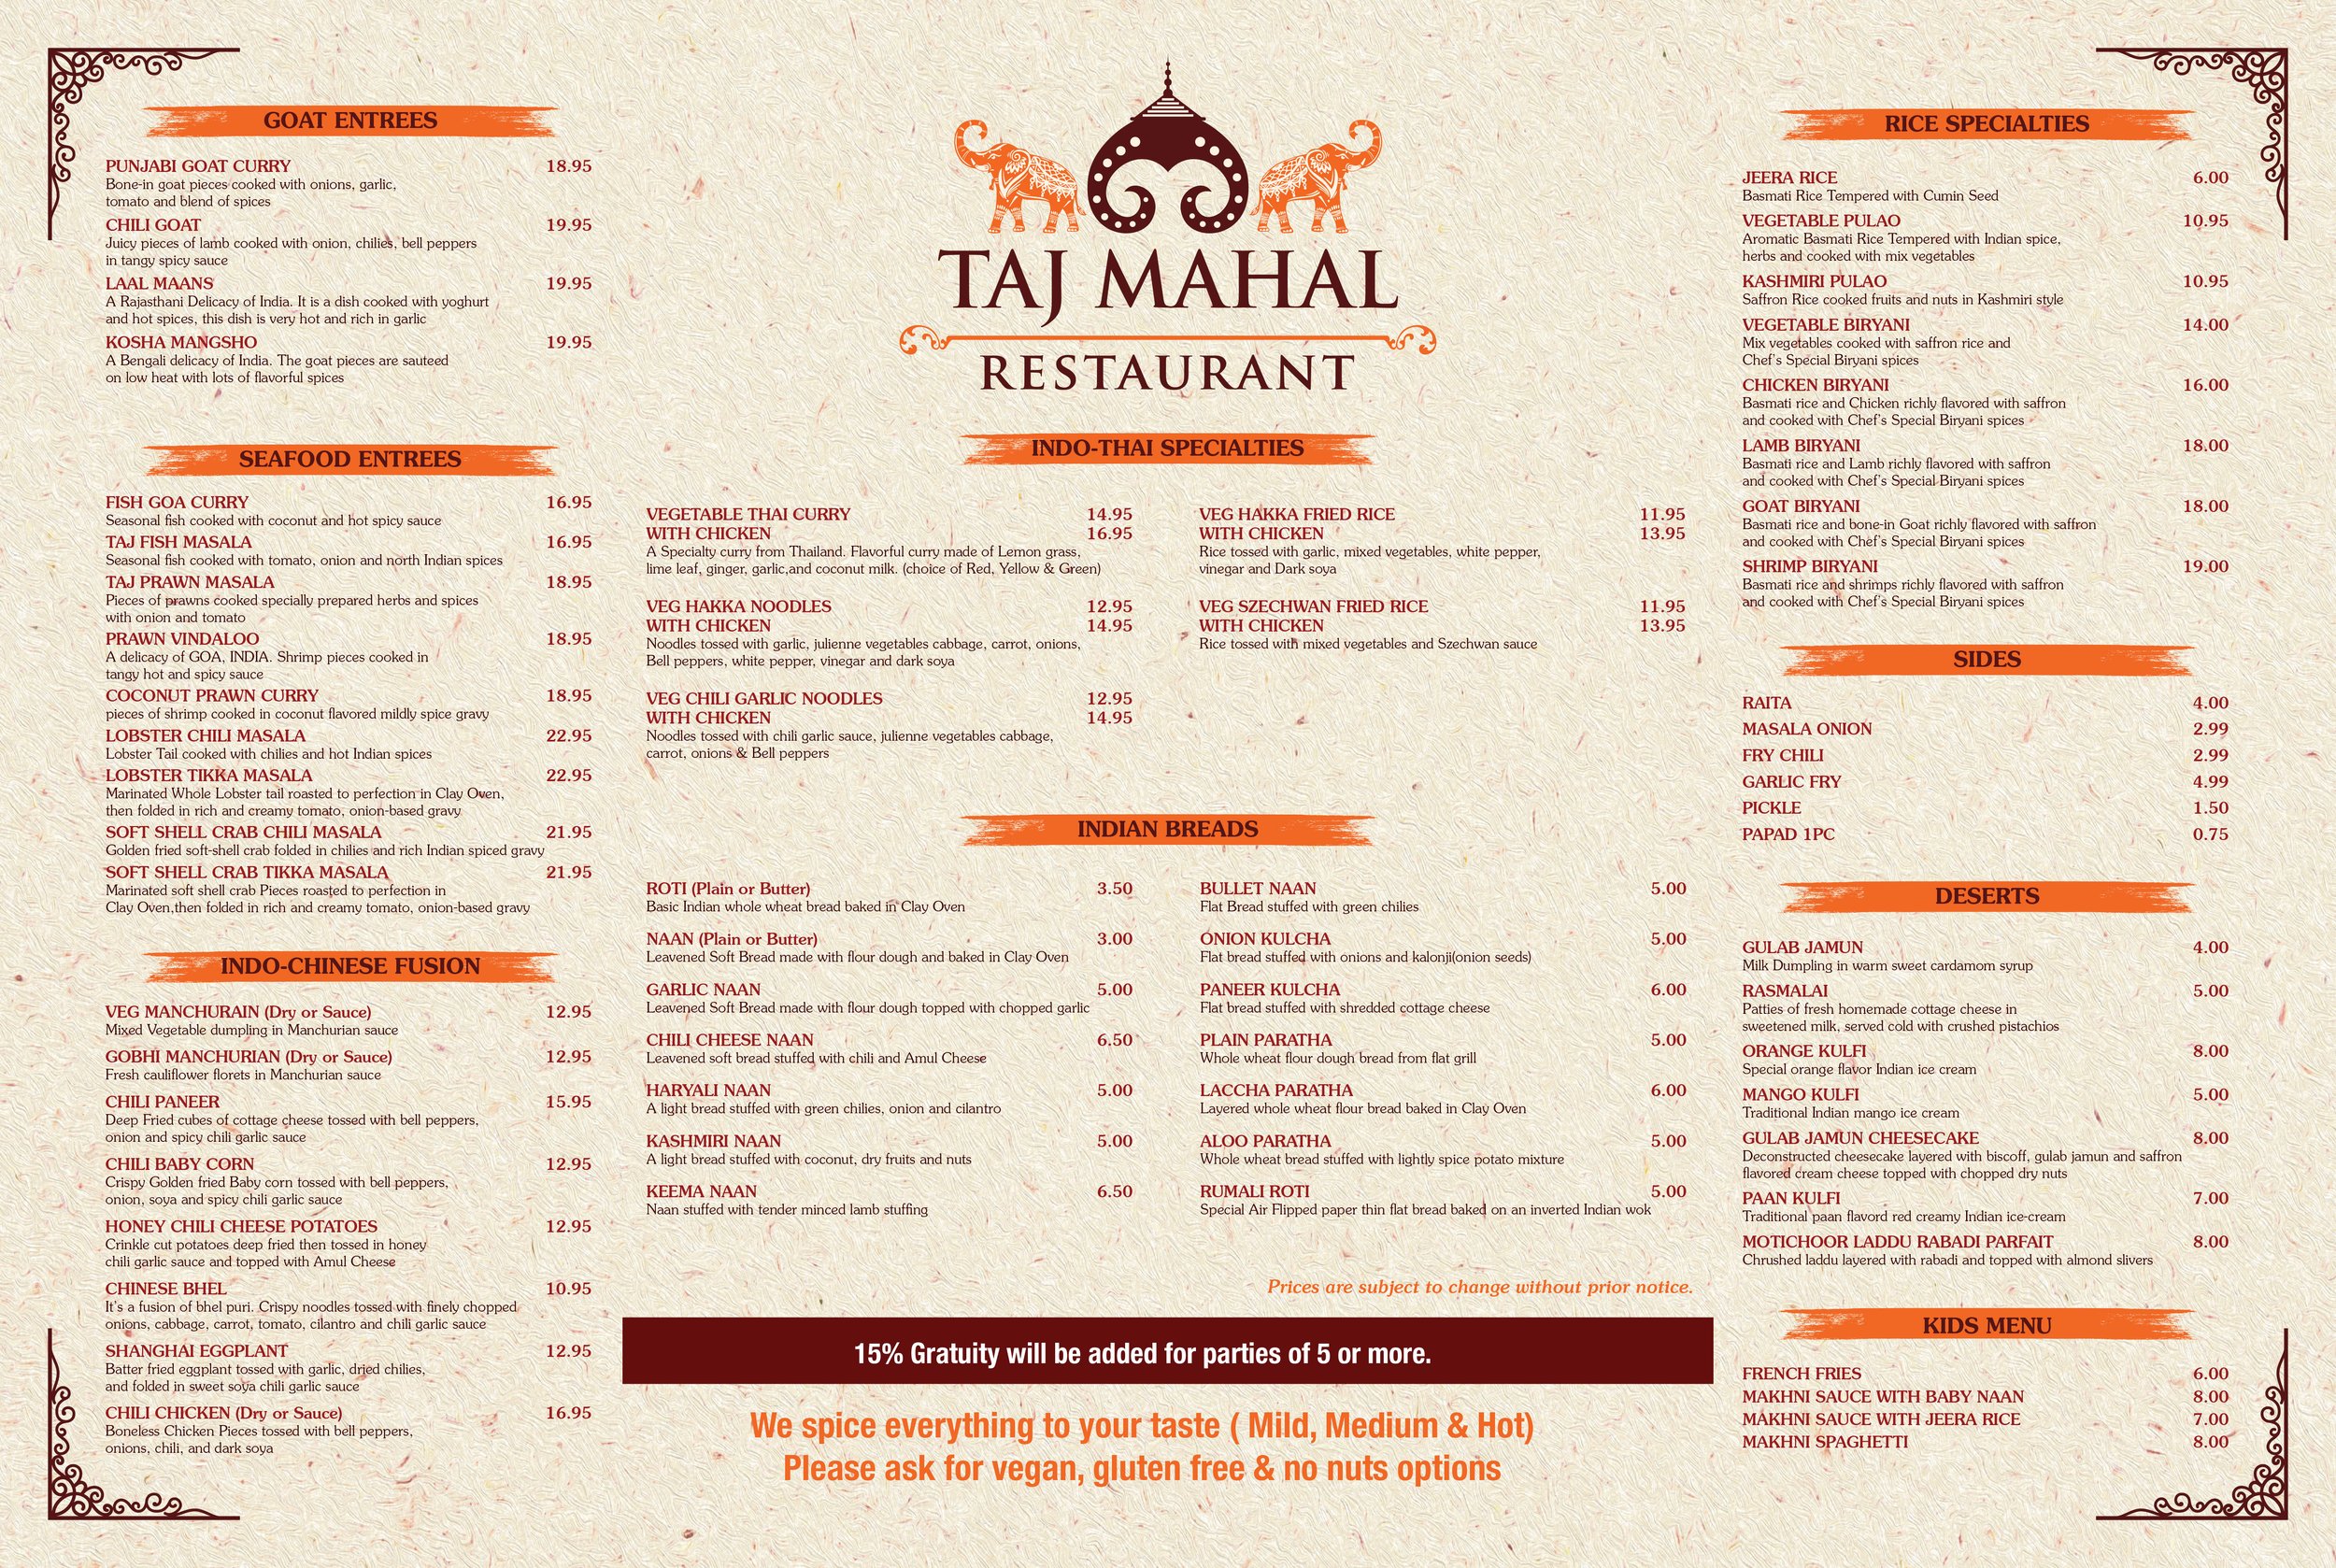 Taj Mahal Restaurant